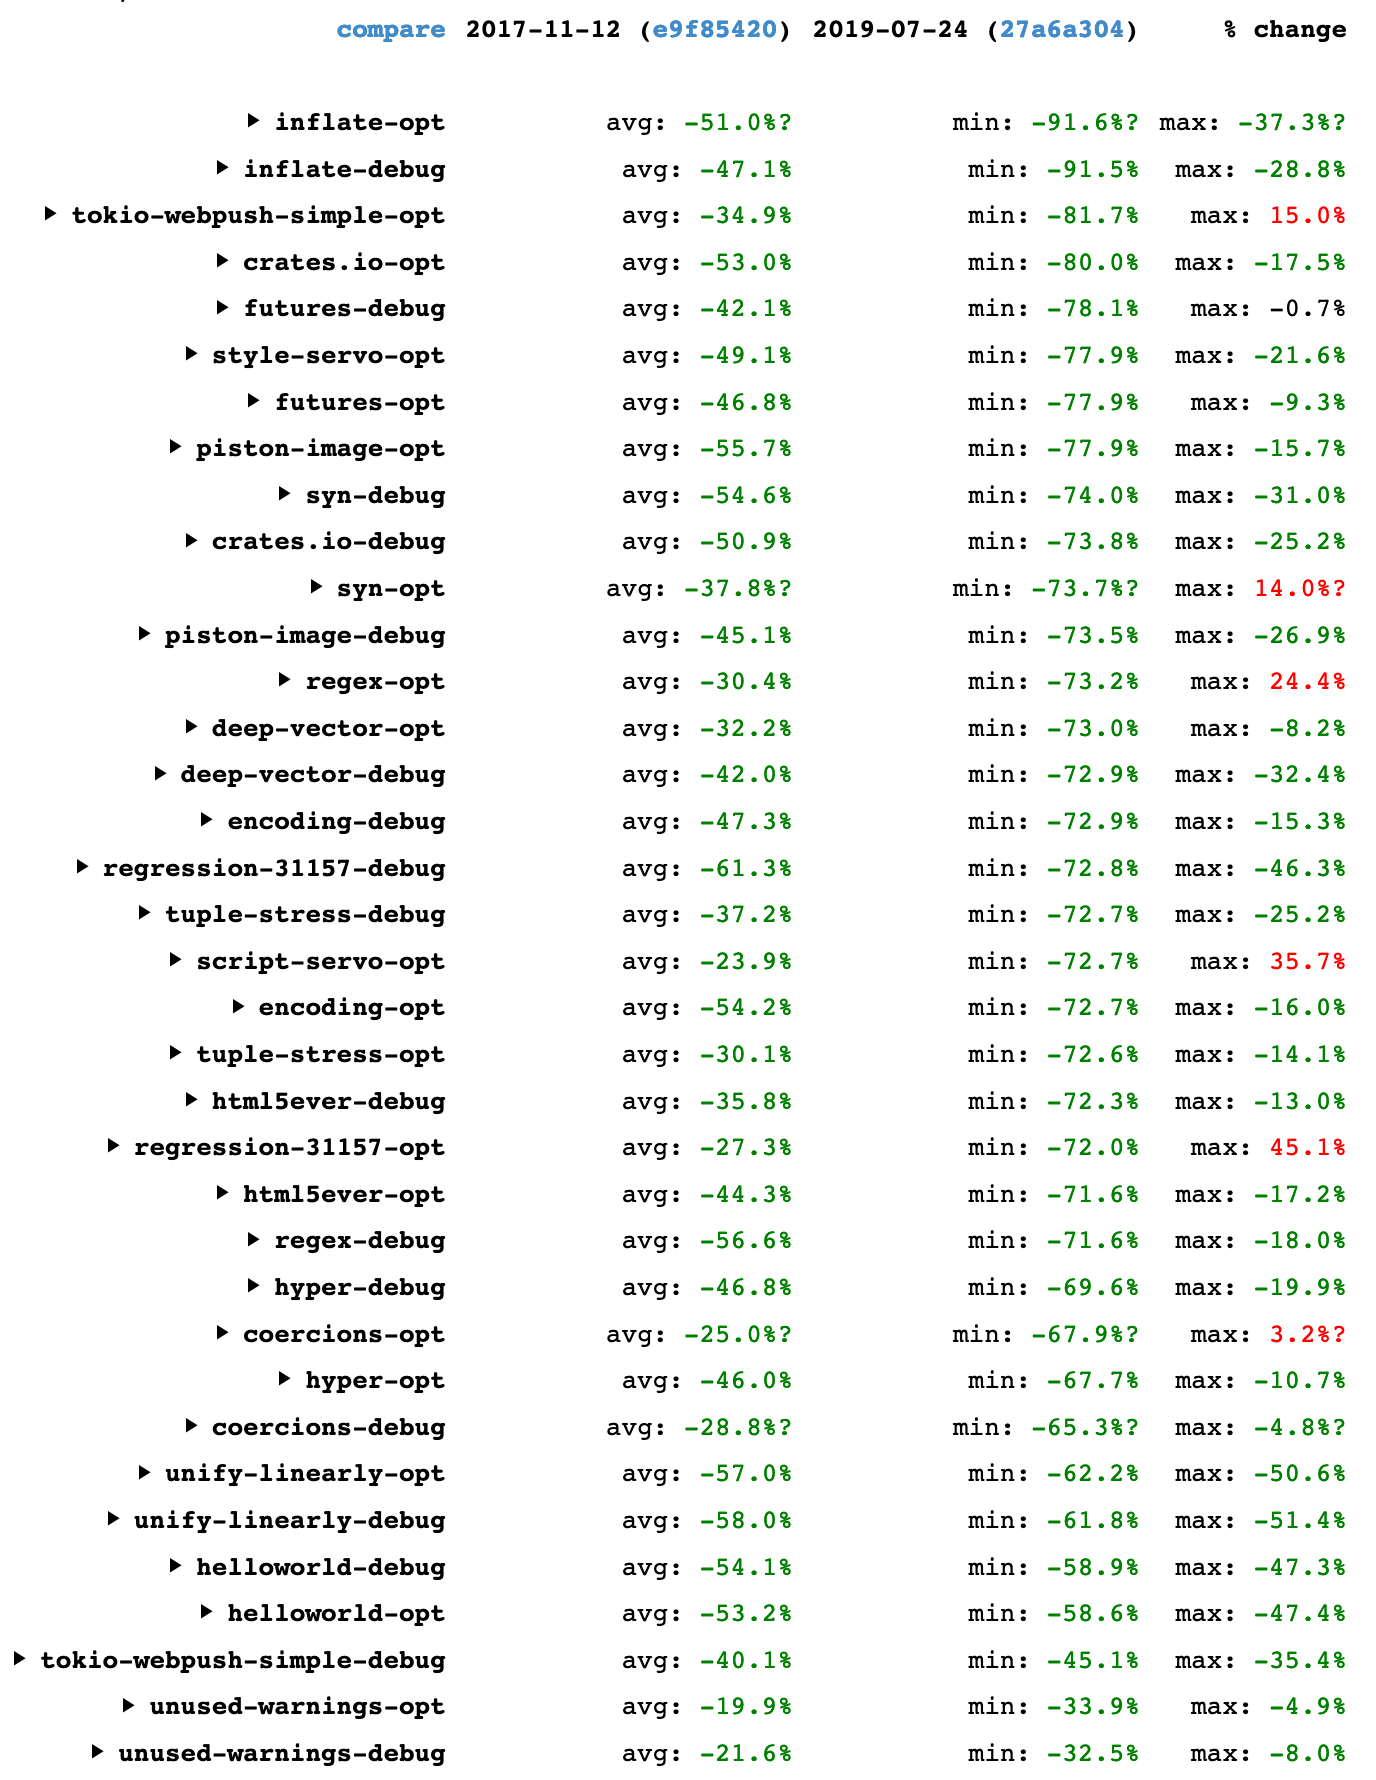 Table showing Rust compiler speedups between 2017-11-12 and 2019-07-24